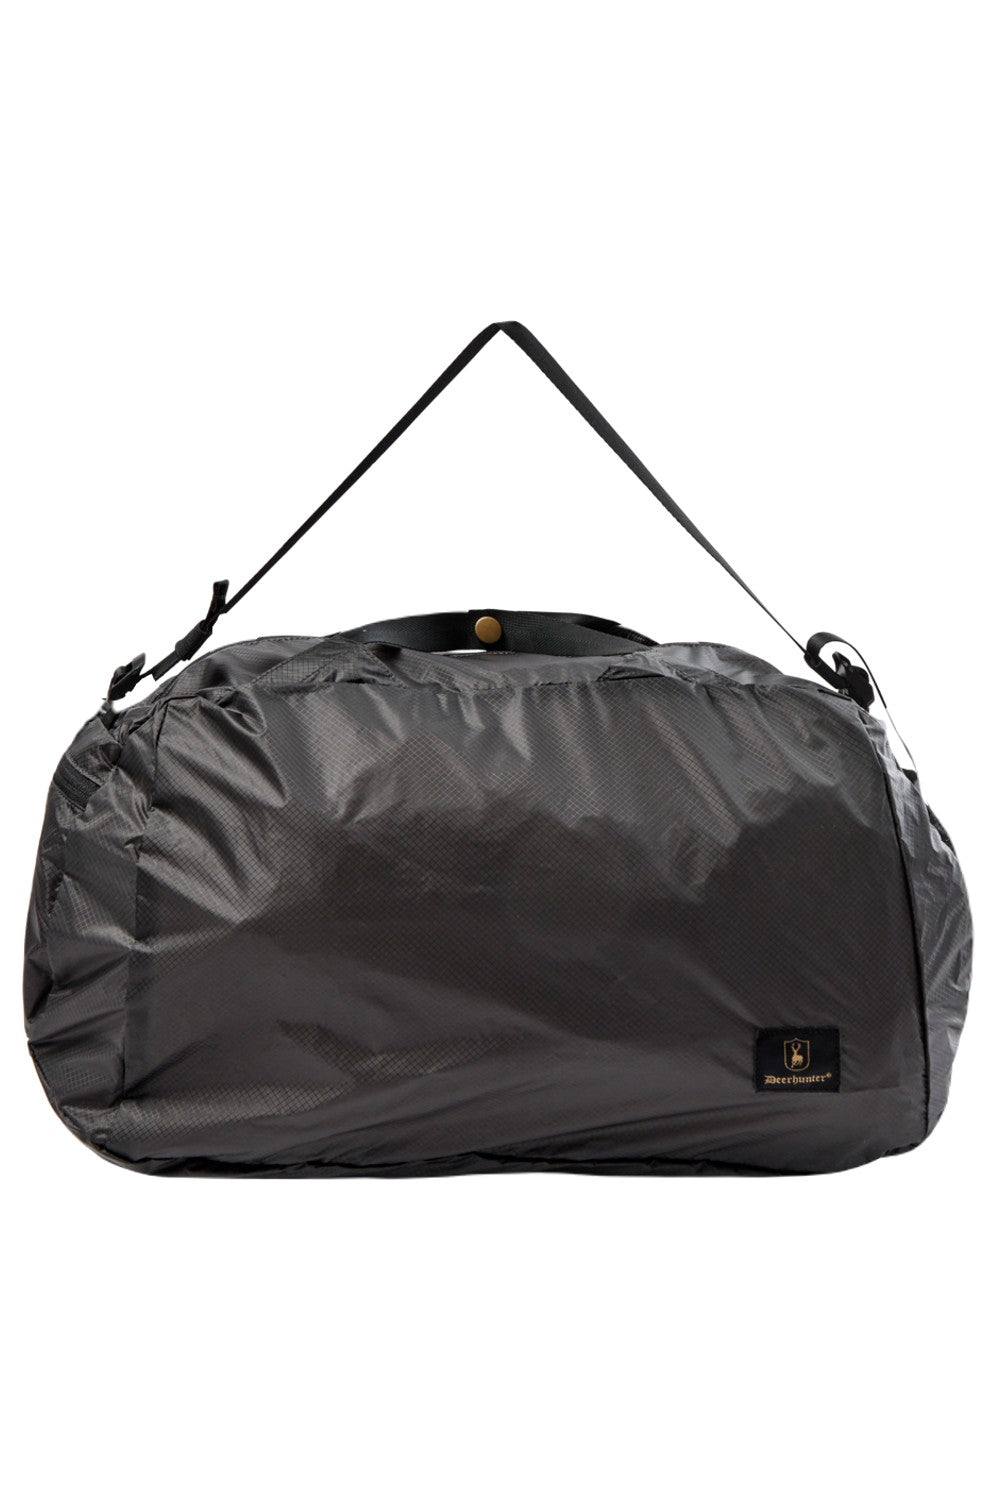 Deerhunter Packable Carry Bag 32L In Black